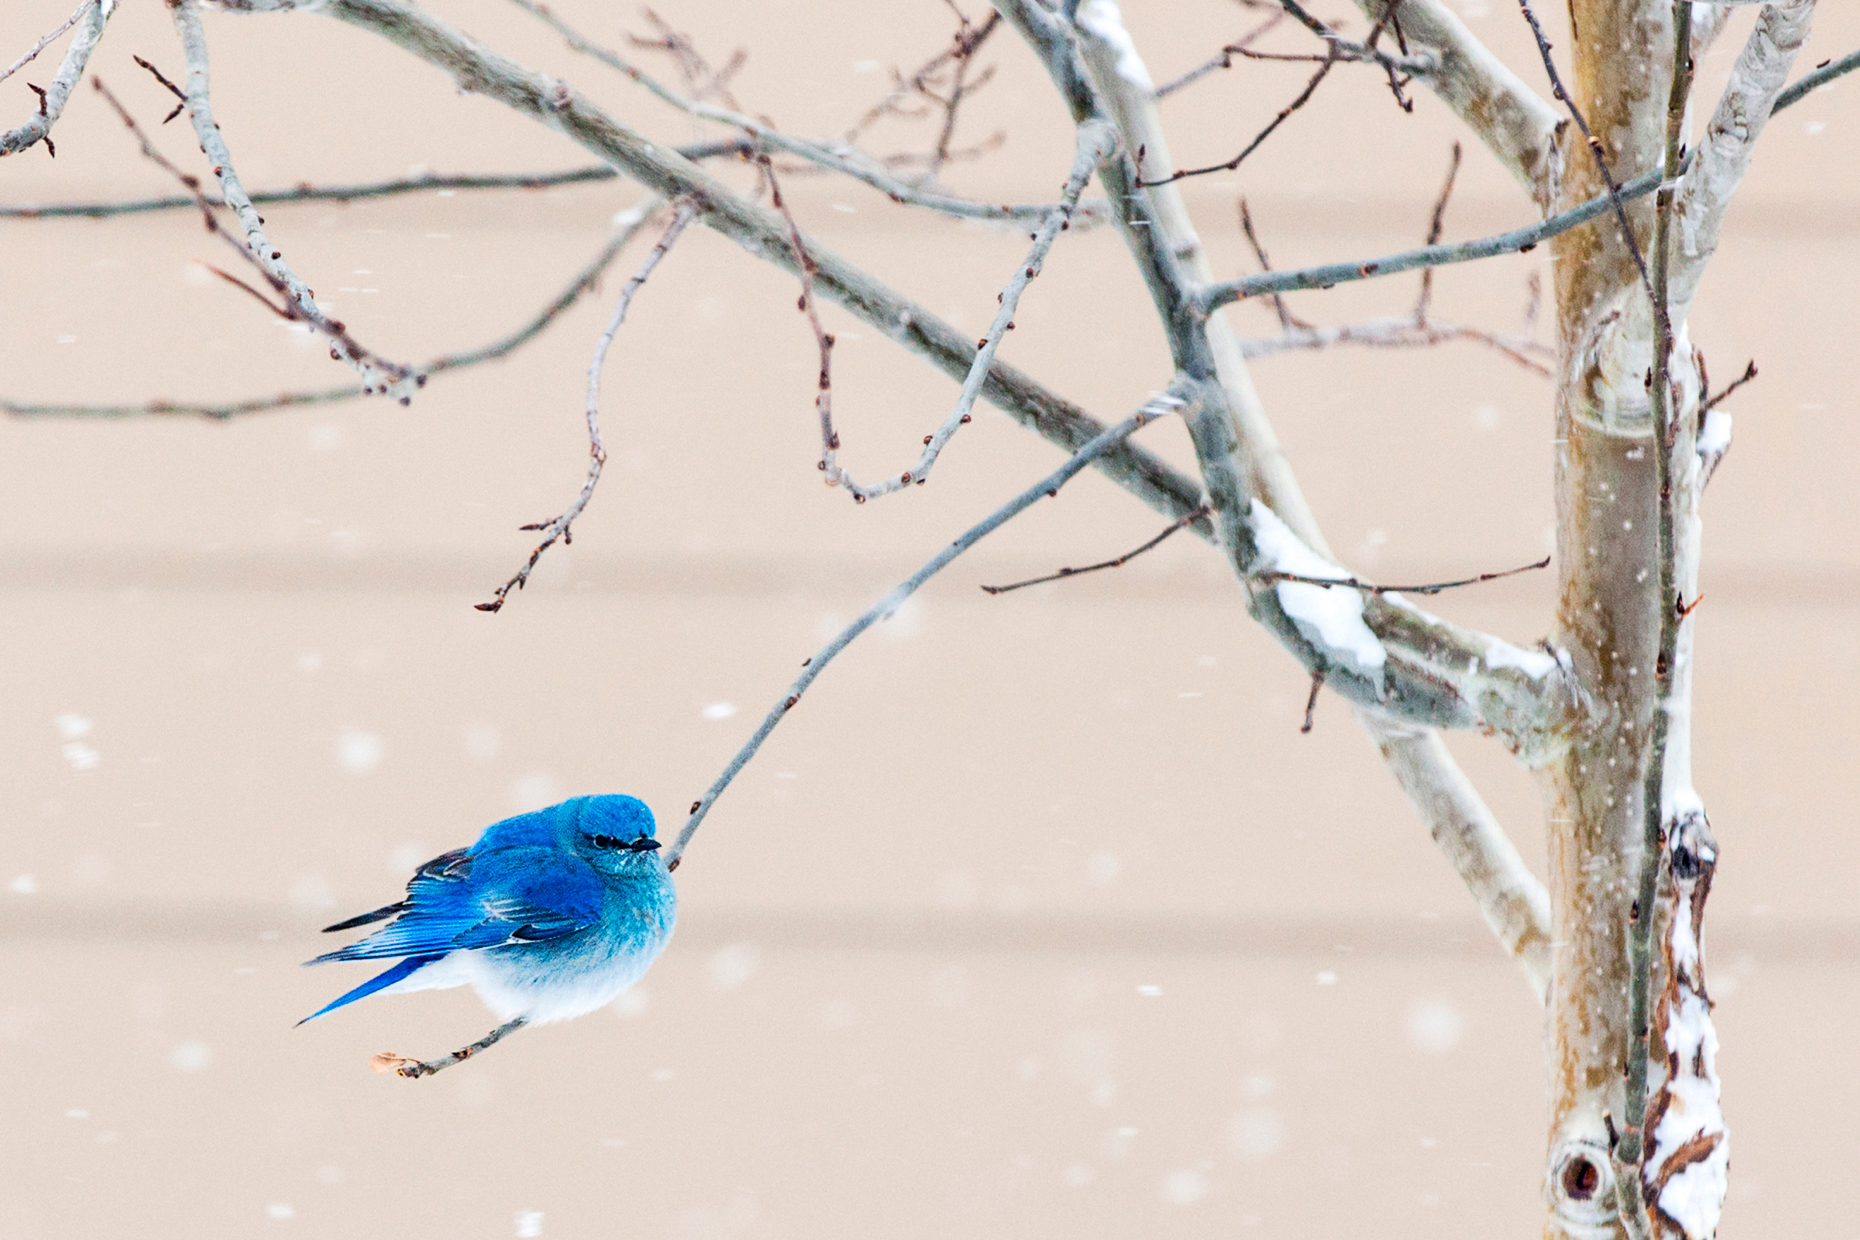 Migrating Mountain Bluebird, Sialia currucoides, seeking shelter in a Colorado springtime snow.